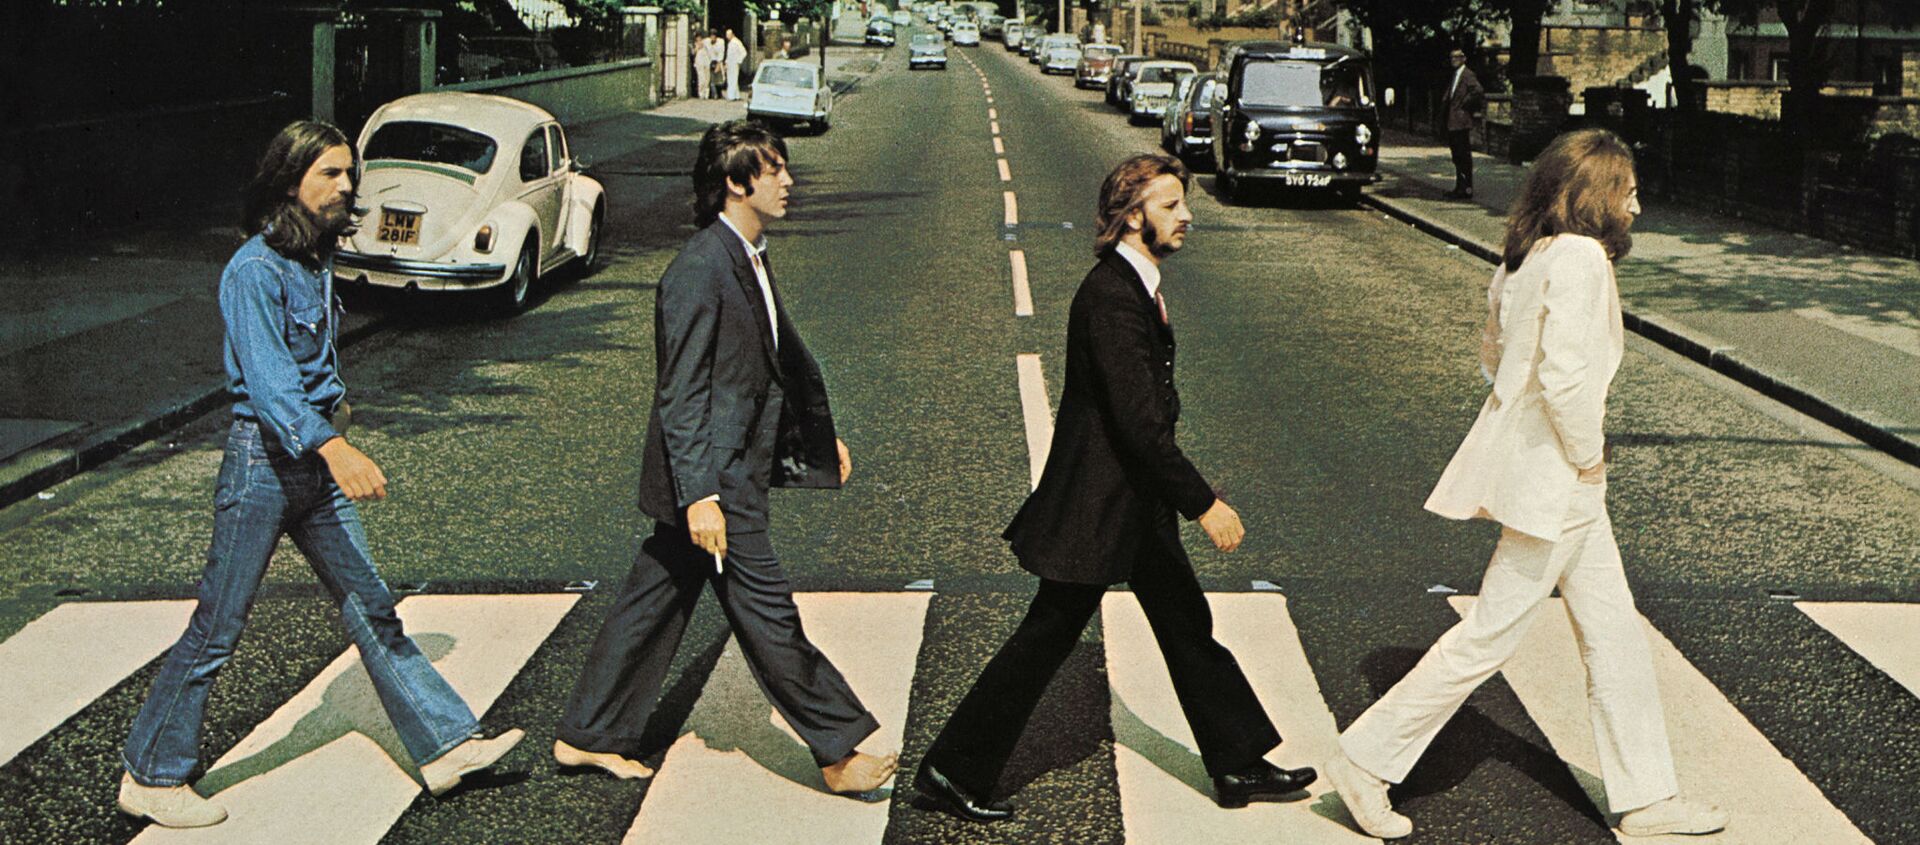 Abbey Road kapağında grup ve müzisyen ya da albüm ismi olmayan tek İngiliz albümü sayılıyor. Abbey Road, Beatles'ın en başarılı albümlerinden birisi ve grup olarak sonuncu kayıtları oldu. İngiltere'de albüm listelere 1. sıradan girdi ve 11 hafta birinci sırada kaldı.  - Sputnik Türkiye, 1920, 21.06.2021